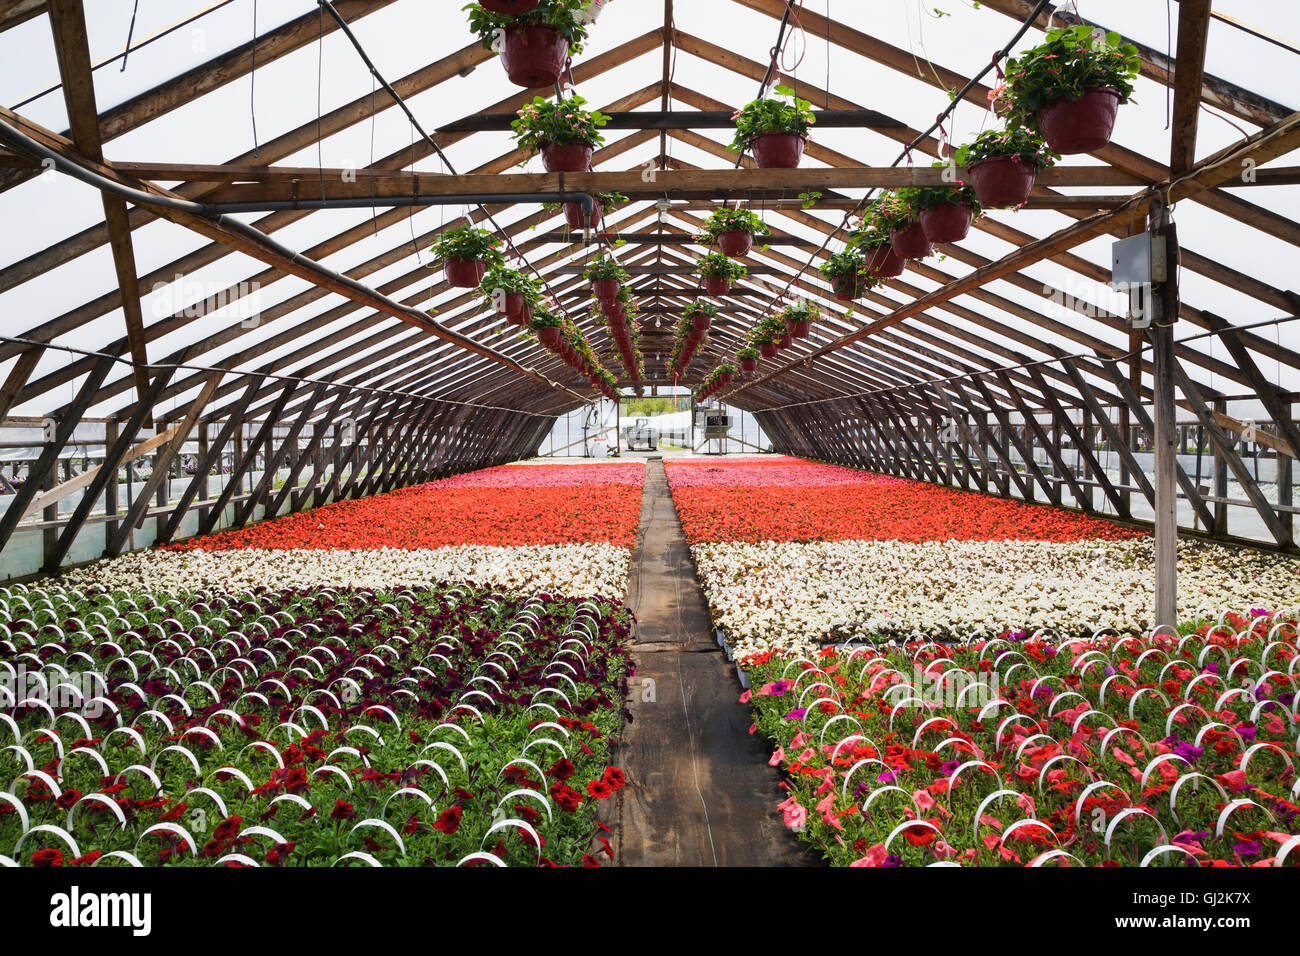 Invernadero comercial con flores rosas en cestas colgantes y Petunias y Begonias en contenedores Foto de stock